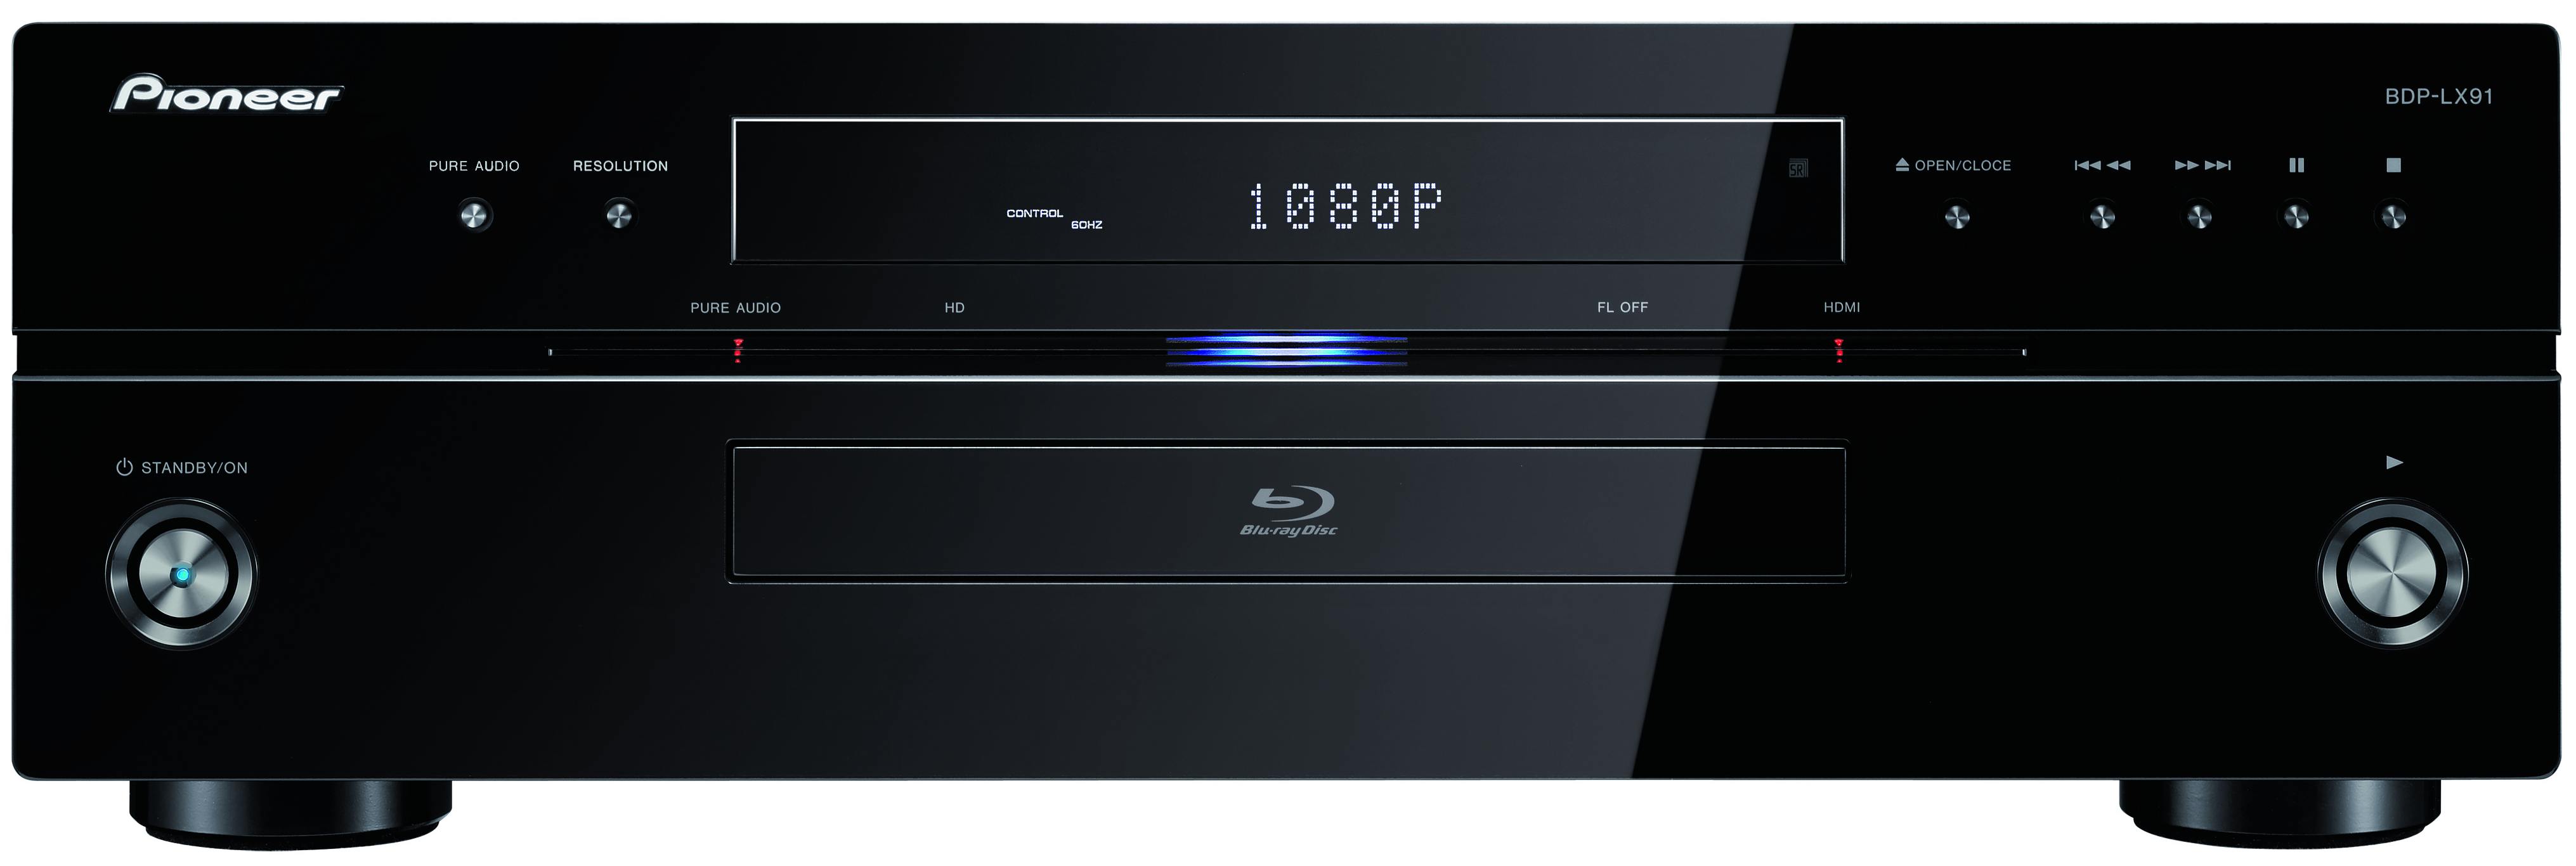 Odtwarzacz Blu-ray Pioneer BDP-LX91